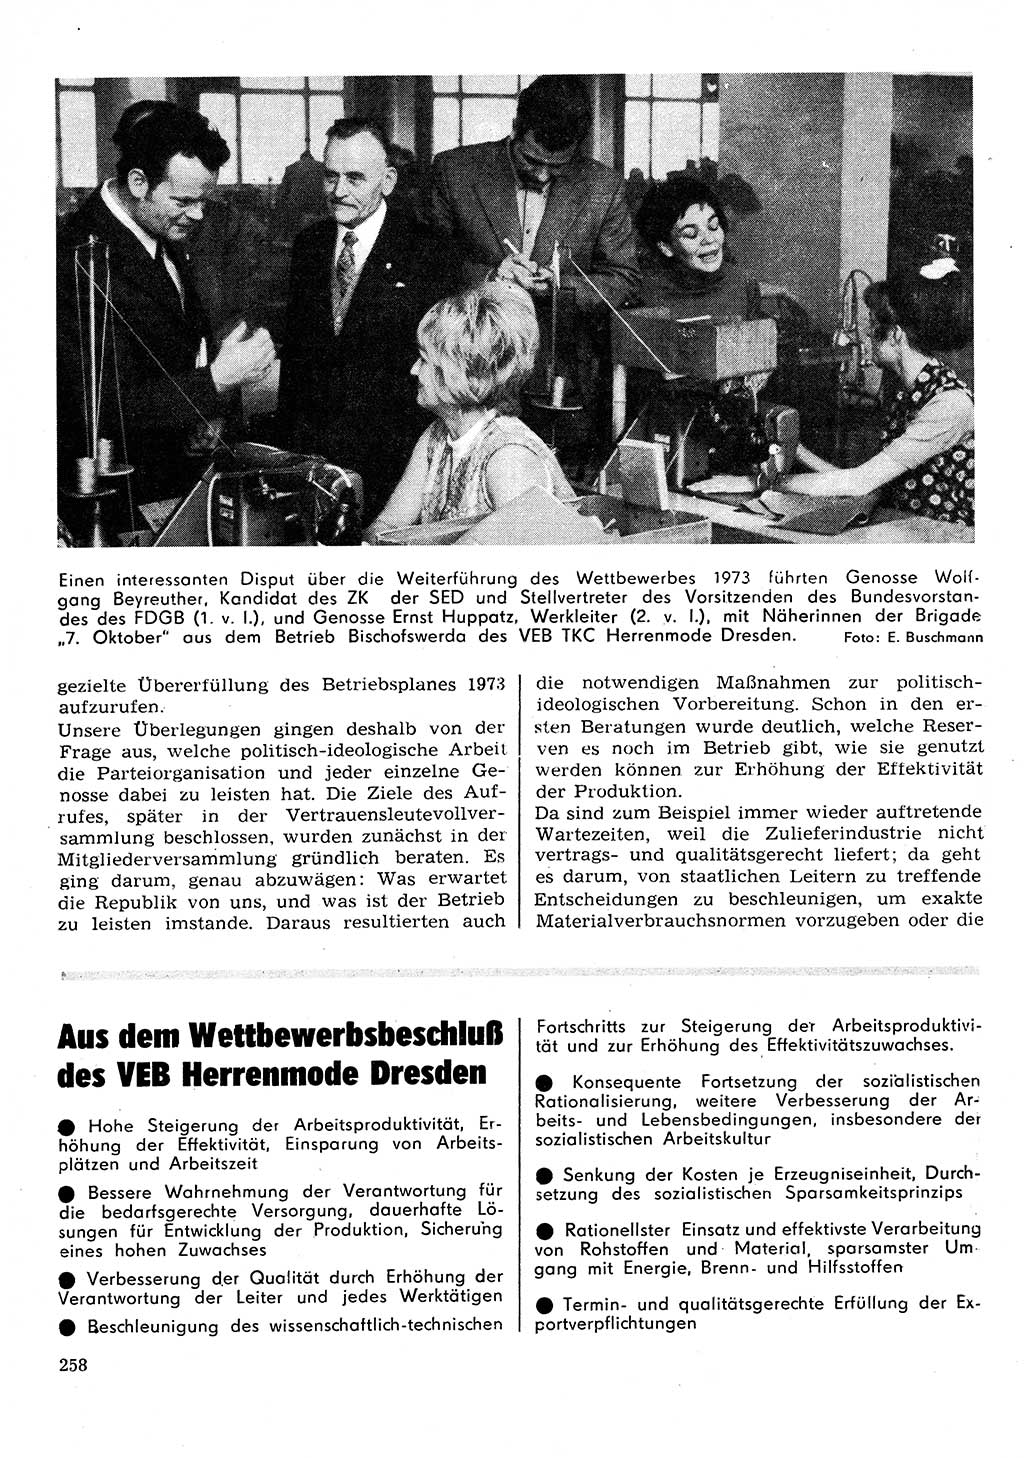 Neuer Weg (NW), Organ des Zentralkomitees (ZK) der SED (Sozialistische Einheitspartei Deutschlands) für Fragen des Parteilebens, 28. Jahrgang [Deutsche Demokratische Republik (DDR)] 1973, Seite 258 (NW ZK SED DDR 1973, S. 258)